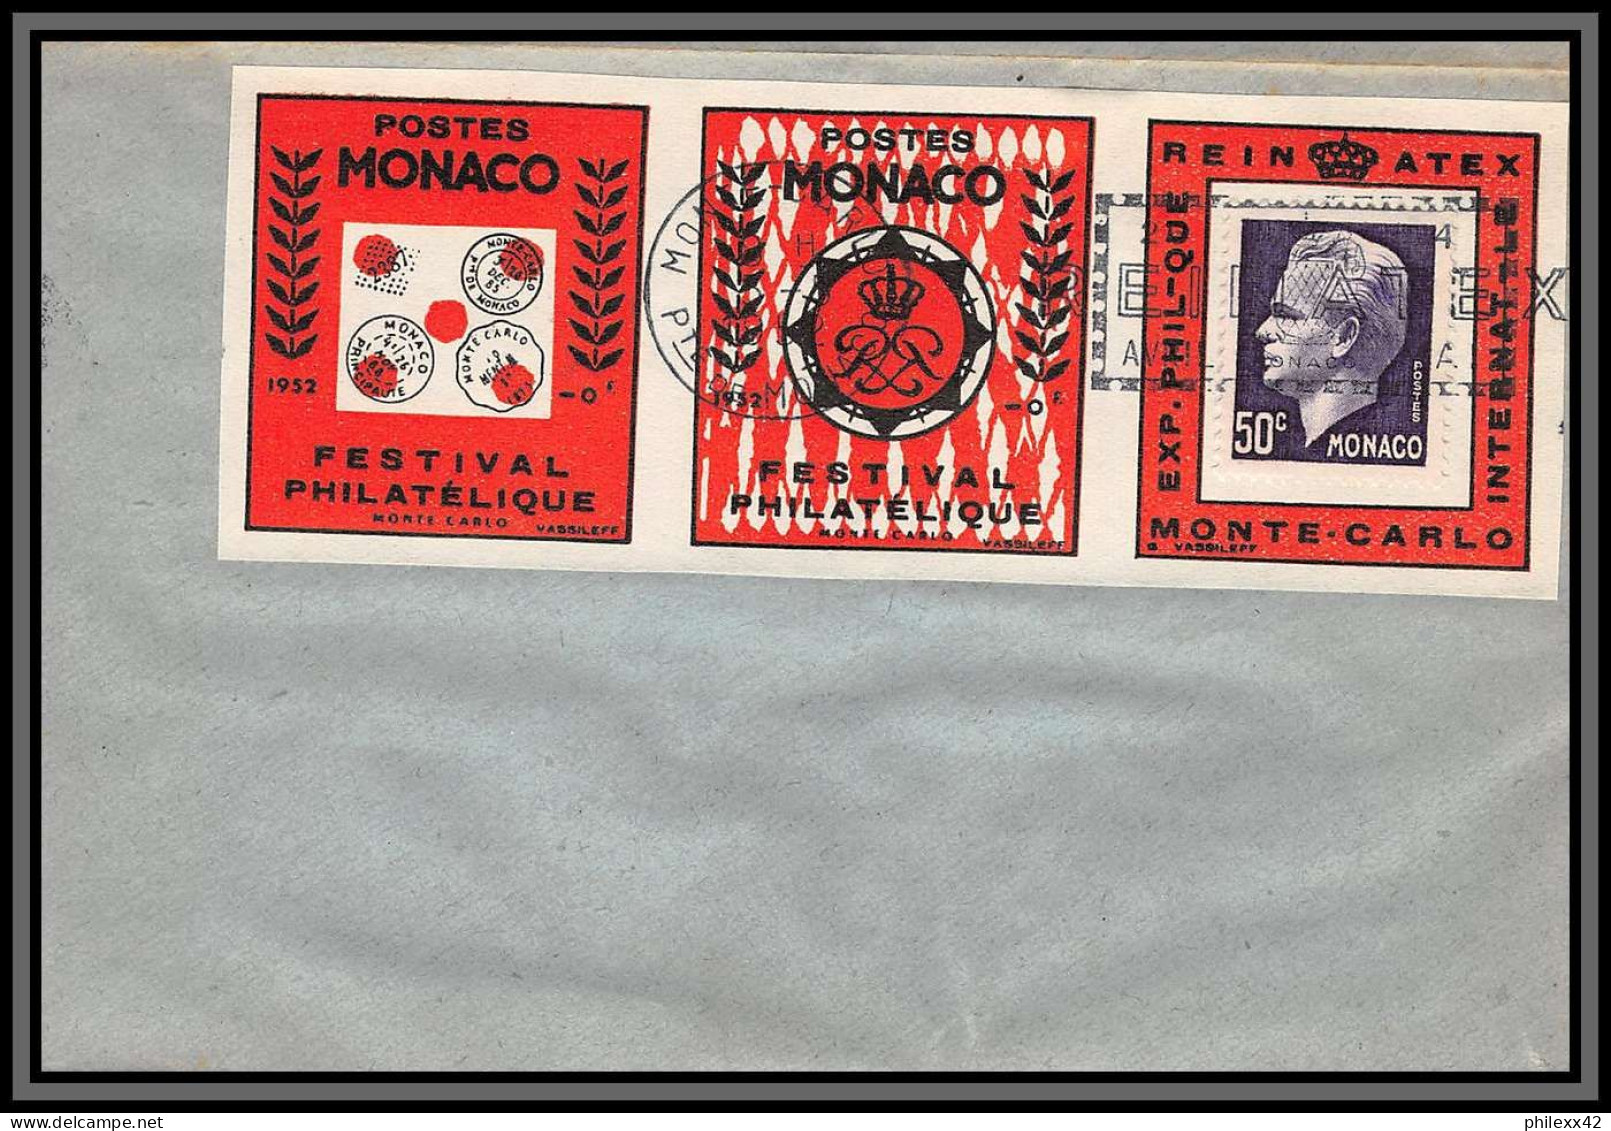 74926 (2) REINATEX 1952 joli lot collection vignette porte timbre stamp holder lettre cover Monaco france italia